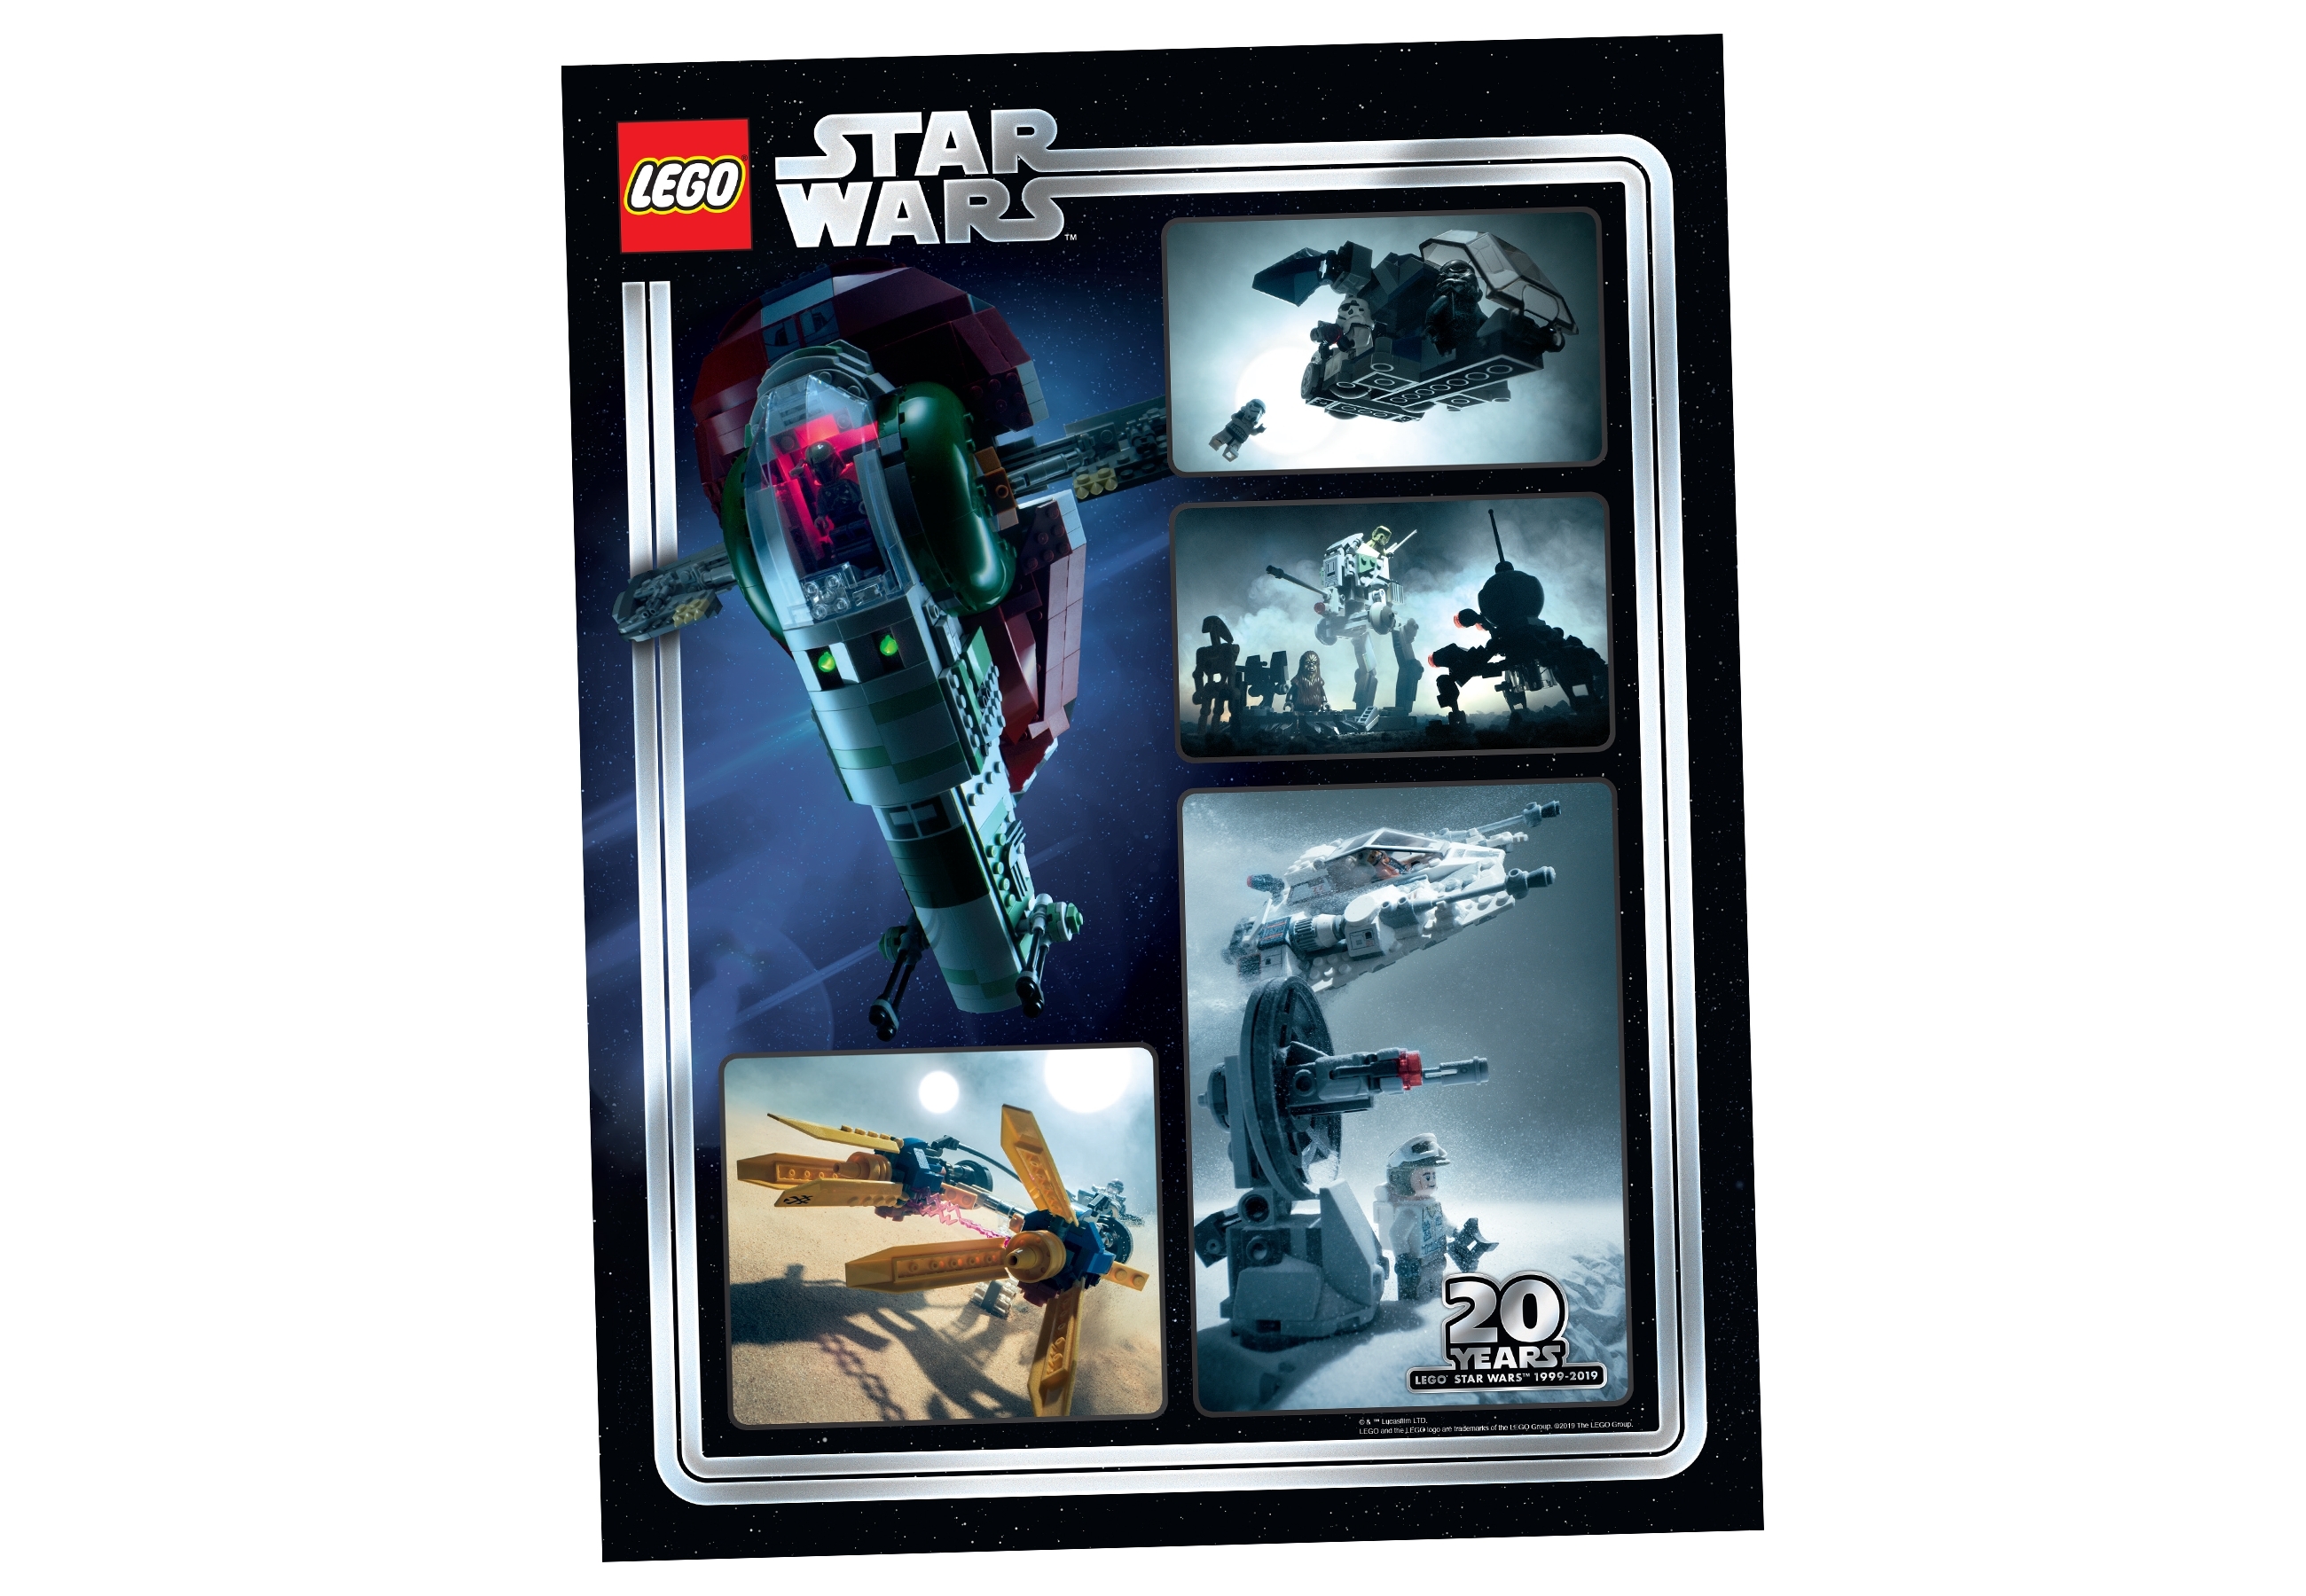 Colector esquina Querido Reproducción artística coleccionable del 20 aniversario de Star Wars™  5005888 | Otros | Oficial LEGO® Shop ES